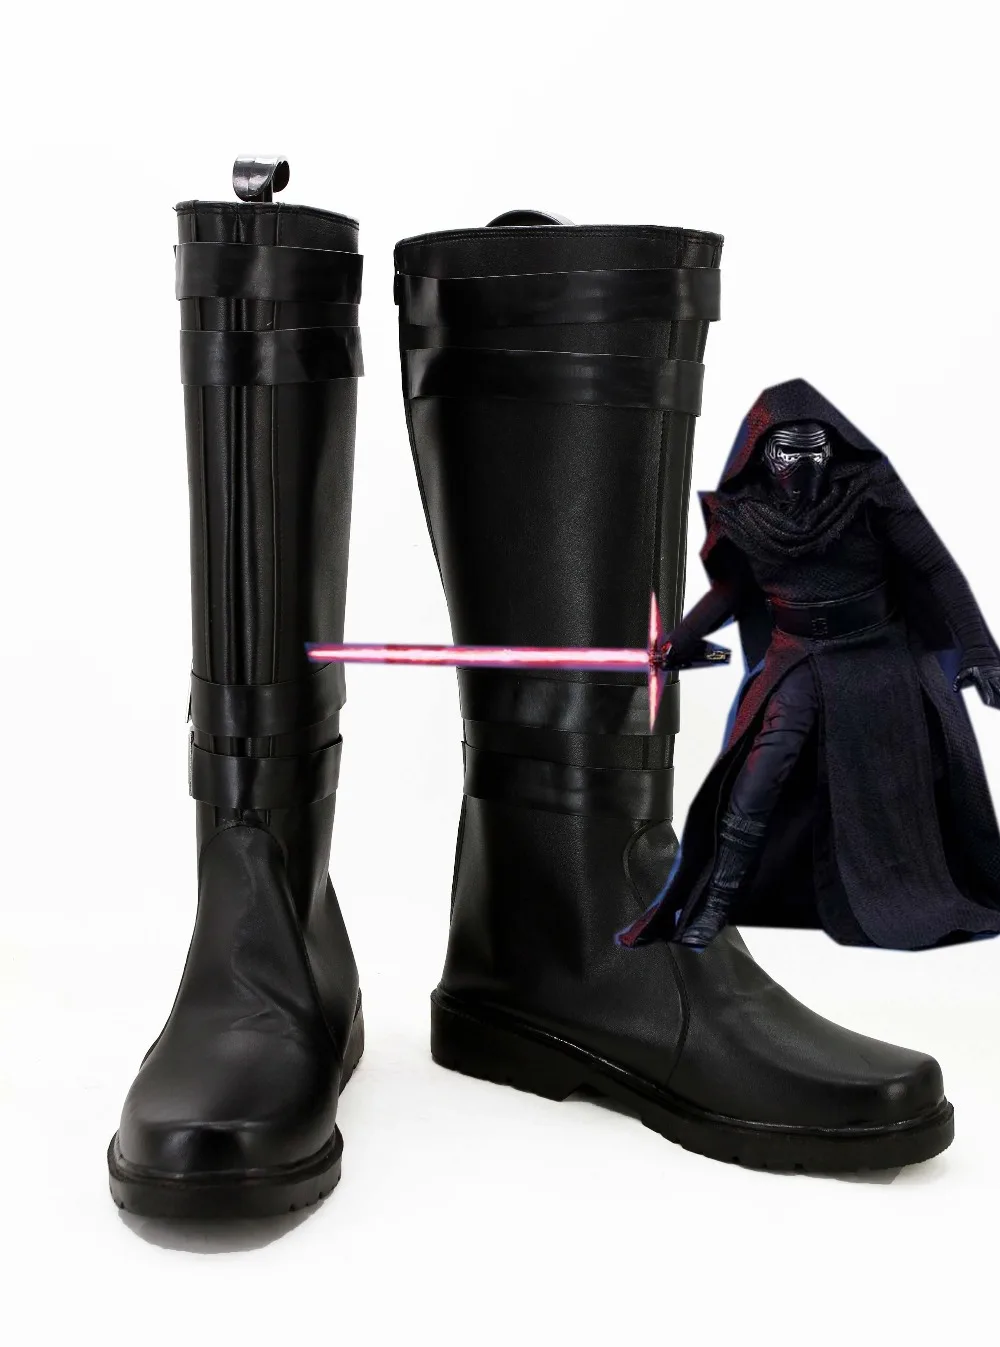 Звездные войны 7 VII The Force Awakens Sith Lord Dark Jedi Kylo Ren; ботинки для костюмированной вечеринки